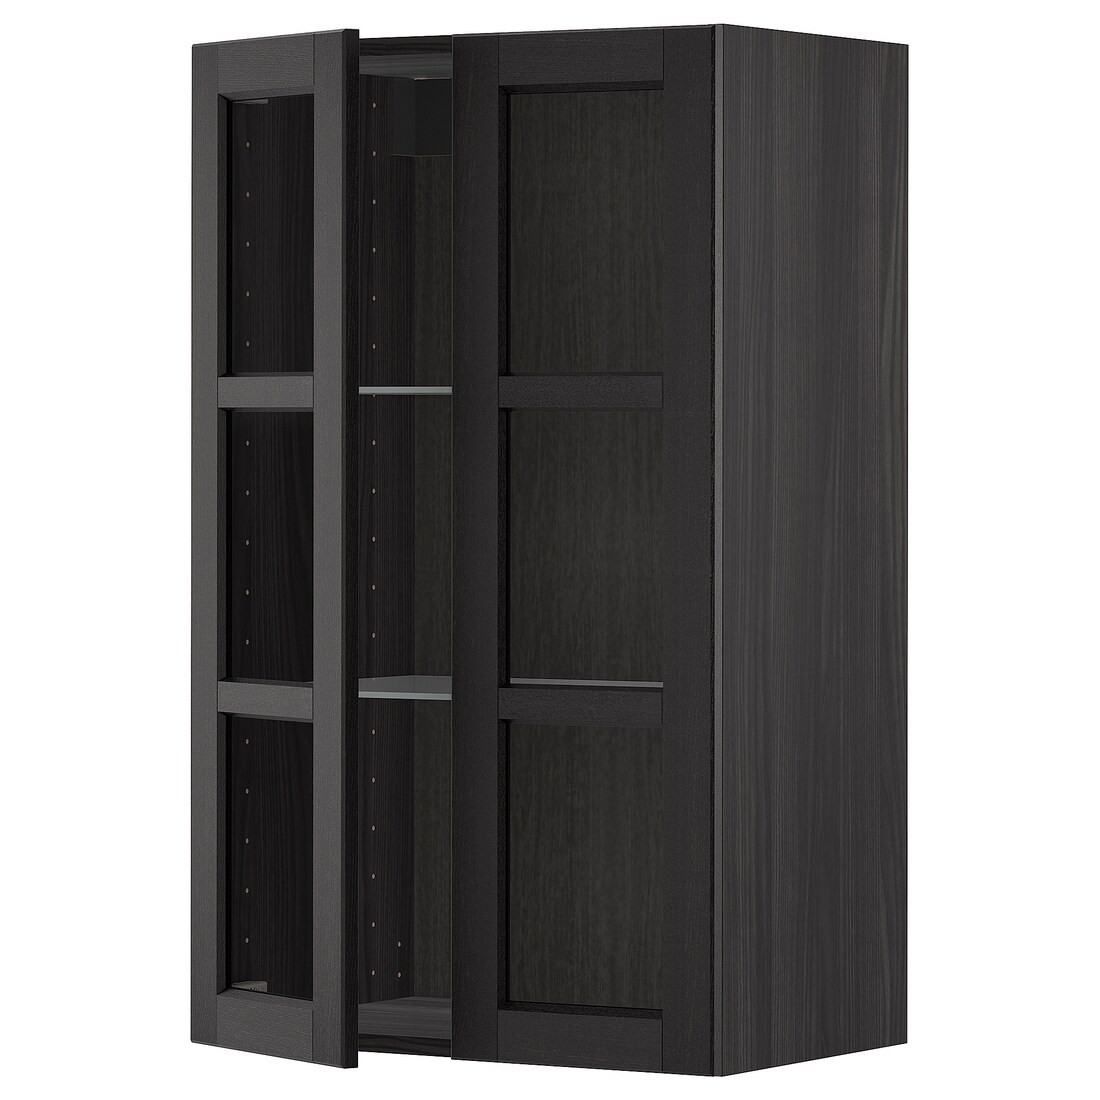 IKEA METOD МЕТОД Навесной шкаф, черный / Lerhyttan черная морилка, 60x100 см 19467965 194.679.65